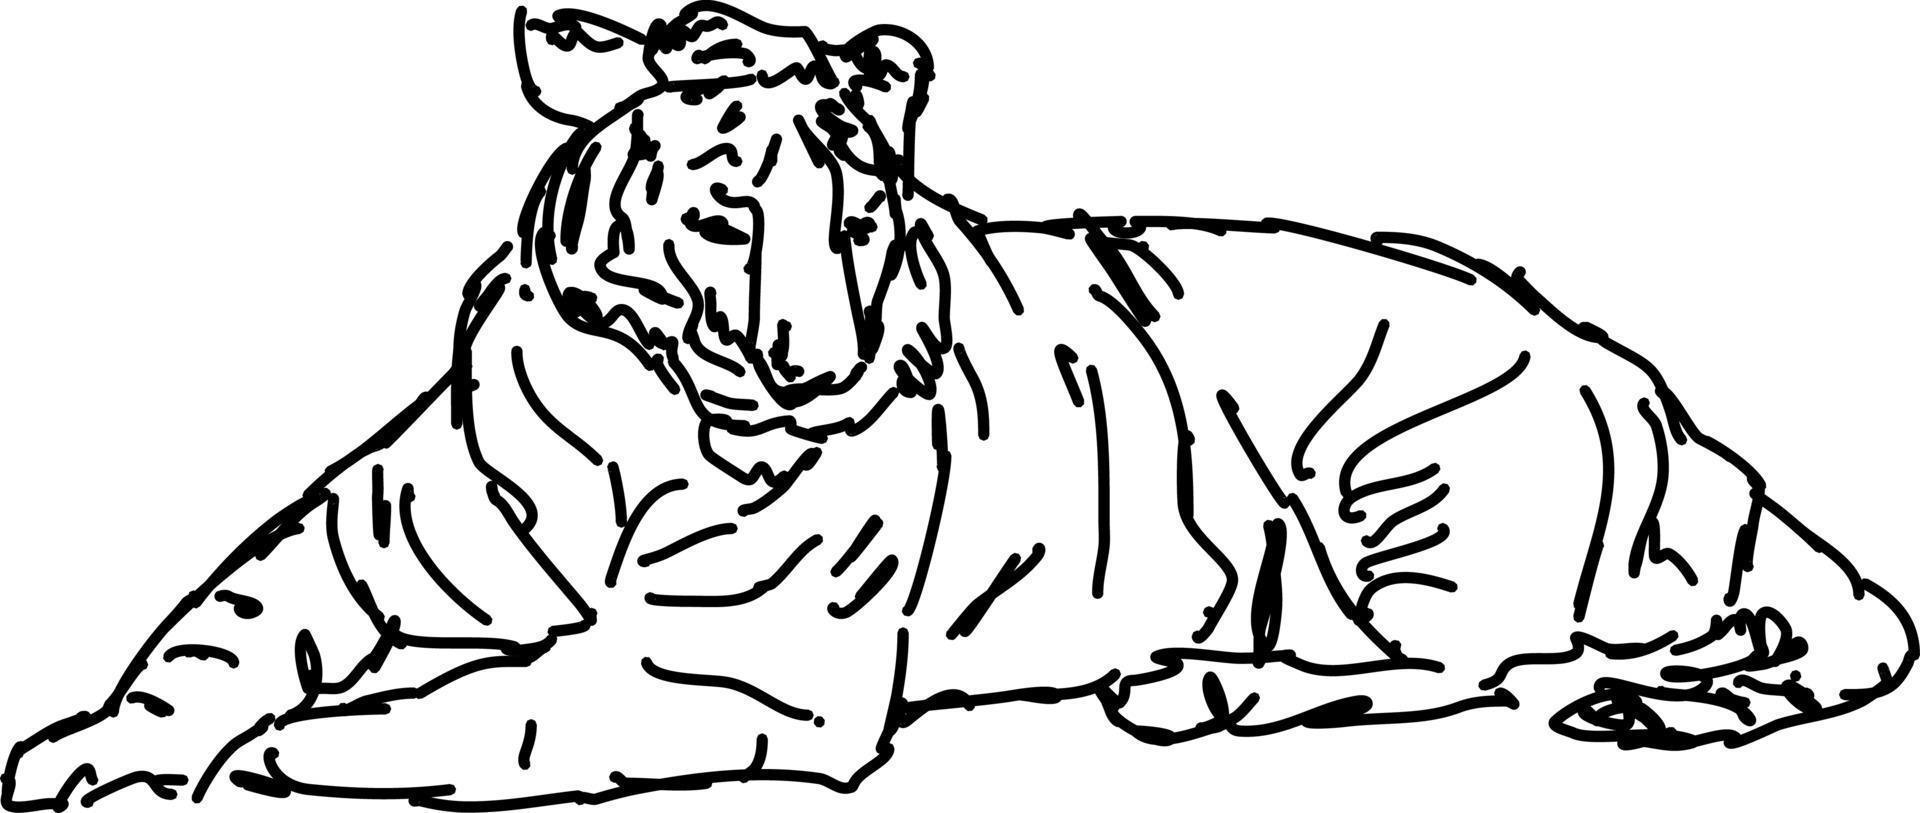 Tigerzeichnung, Illustration, Vektor auf weißem Hintergrund.